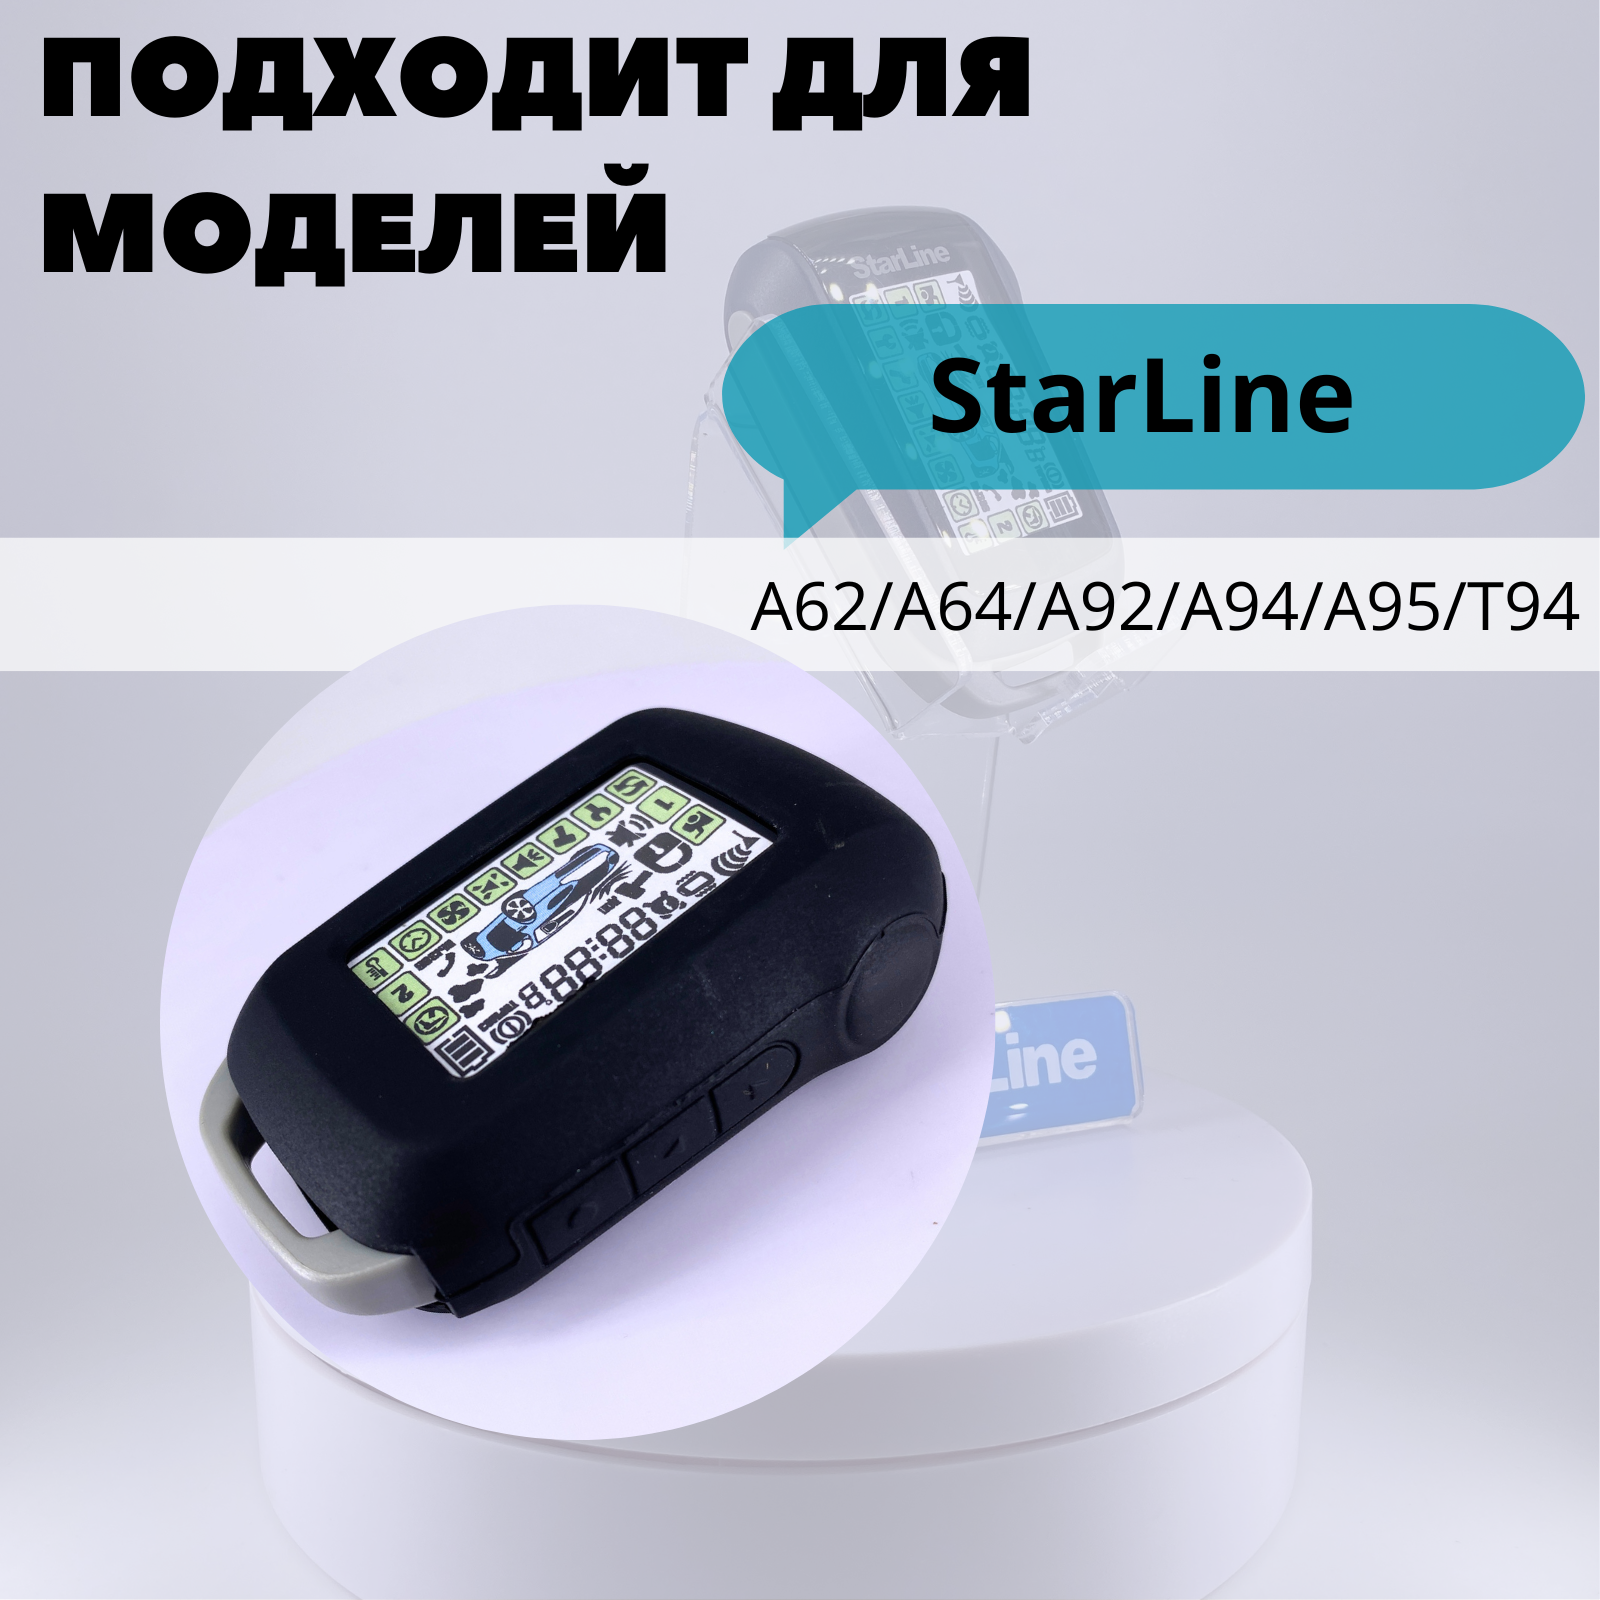 Чехол силиконовый Старлайн подходит для брелока ( пульта ) автосигнализации Starline A62 / A92 / A64 / A94 (Цвет черный)